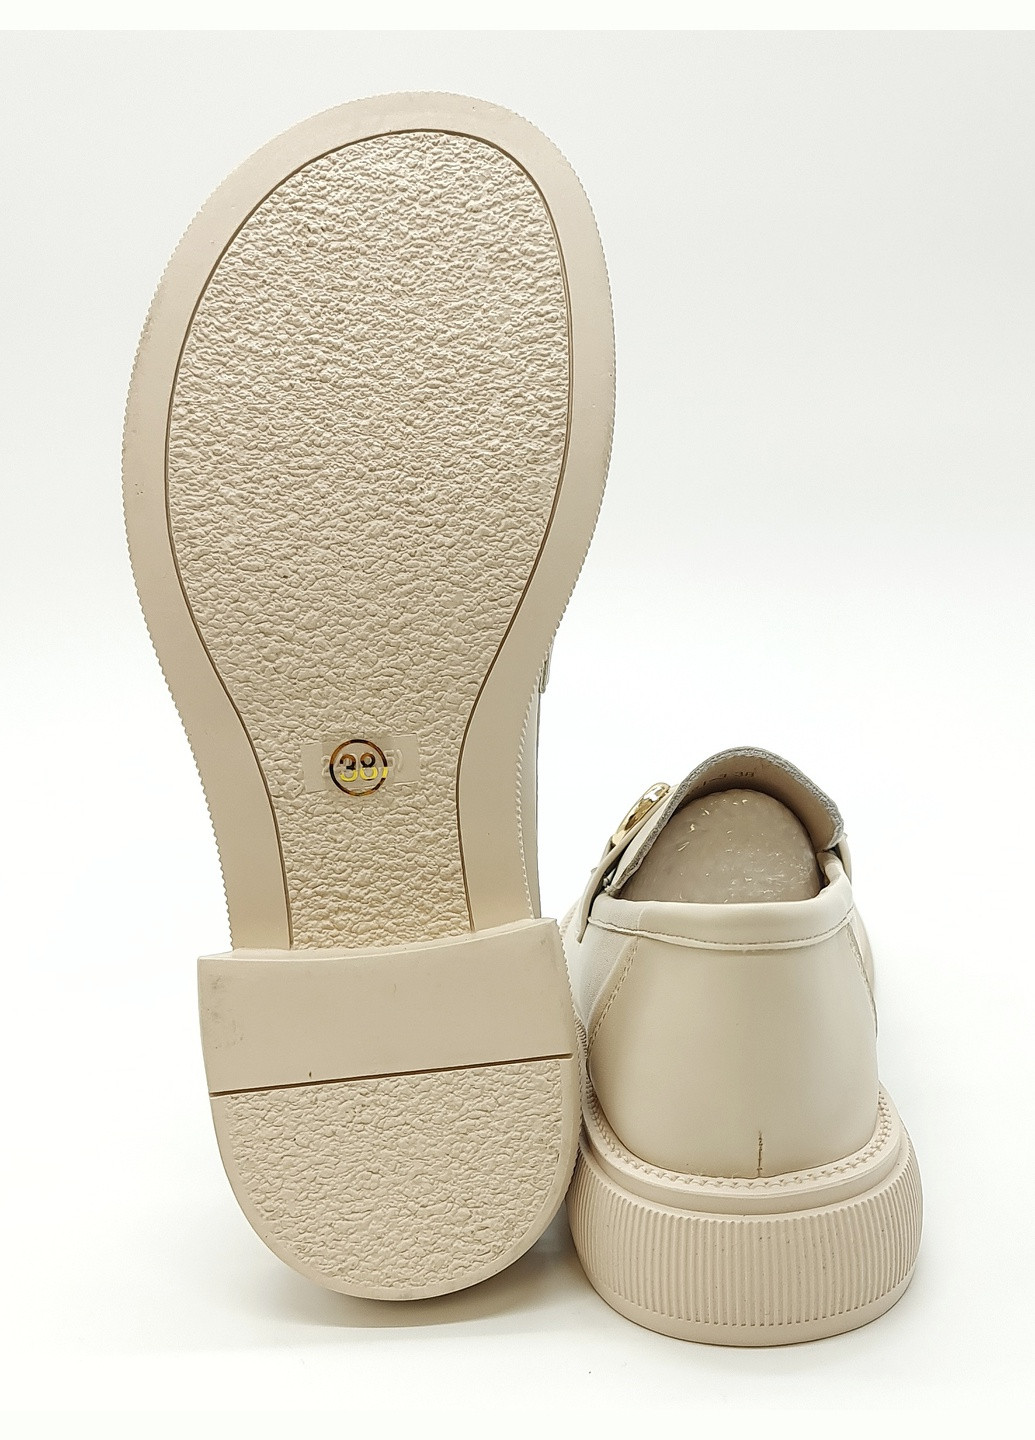 Женские туфли бежевые кожаные YA-17-2 25,5 см (р) Yalasou